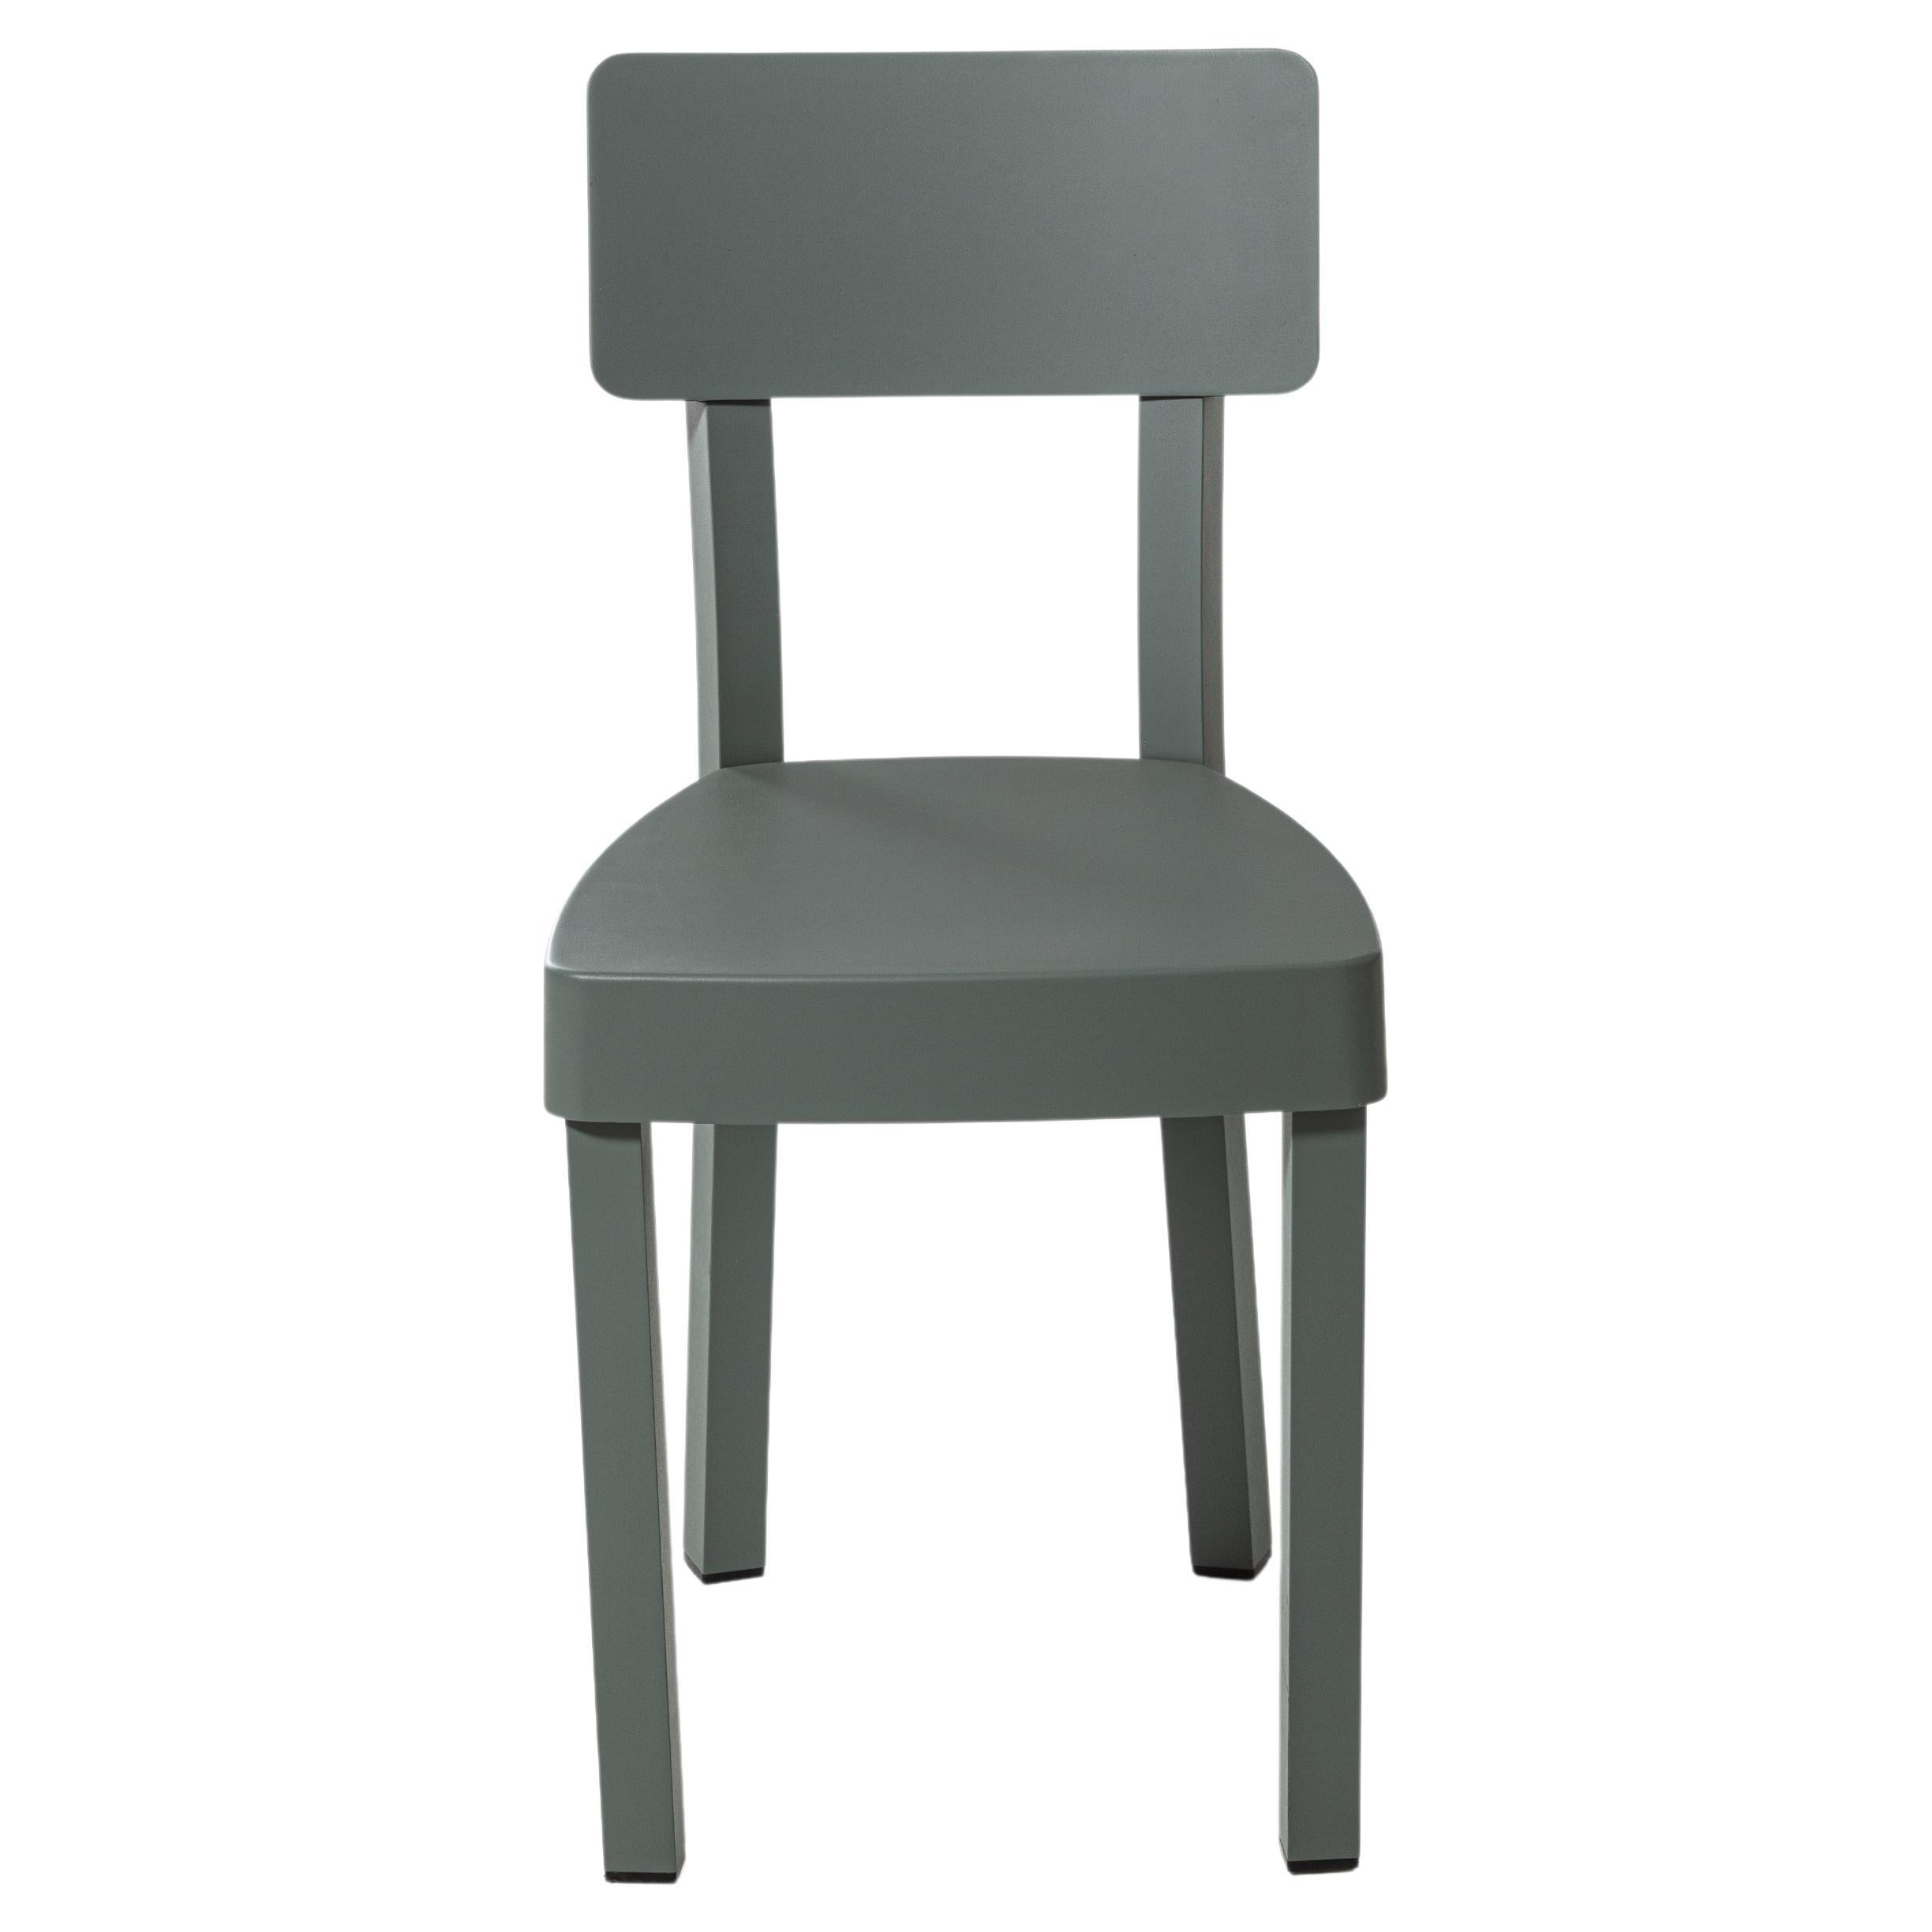 Gervasoni Inout 23 Outdoor-Stuhl aus salbeifarben lackiertem Aluminium von Paola Navone